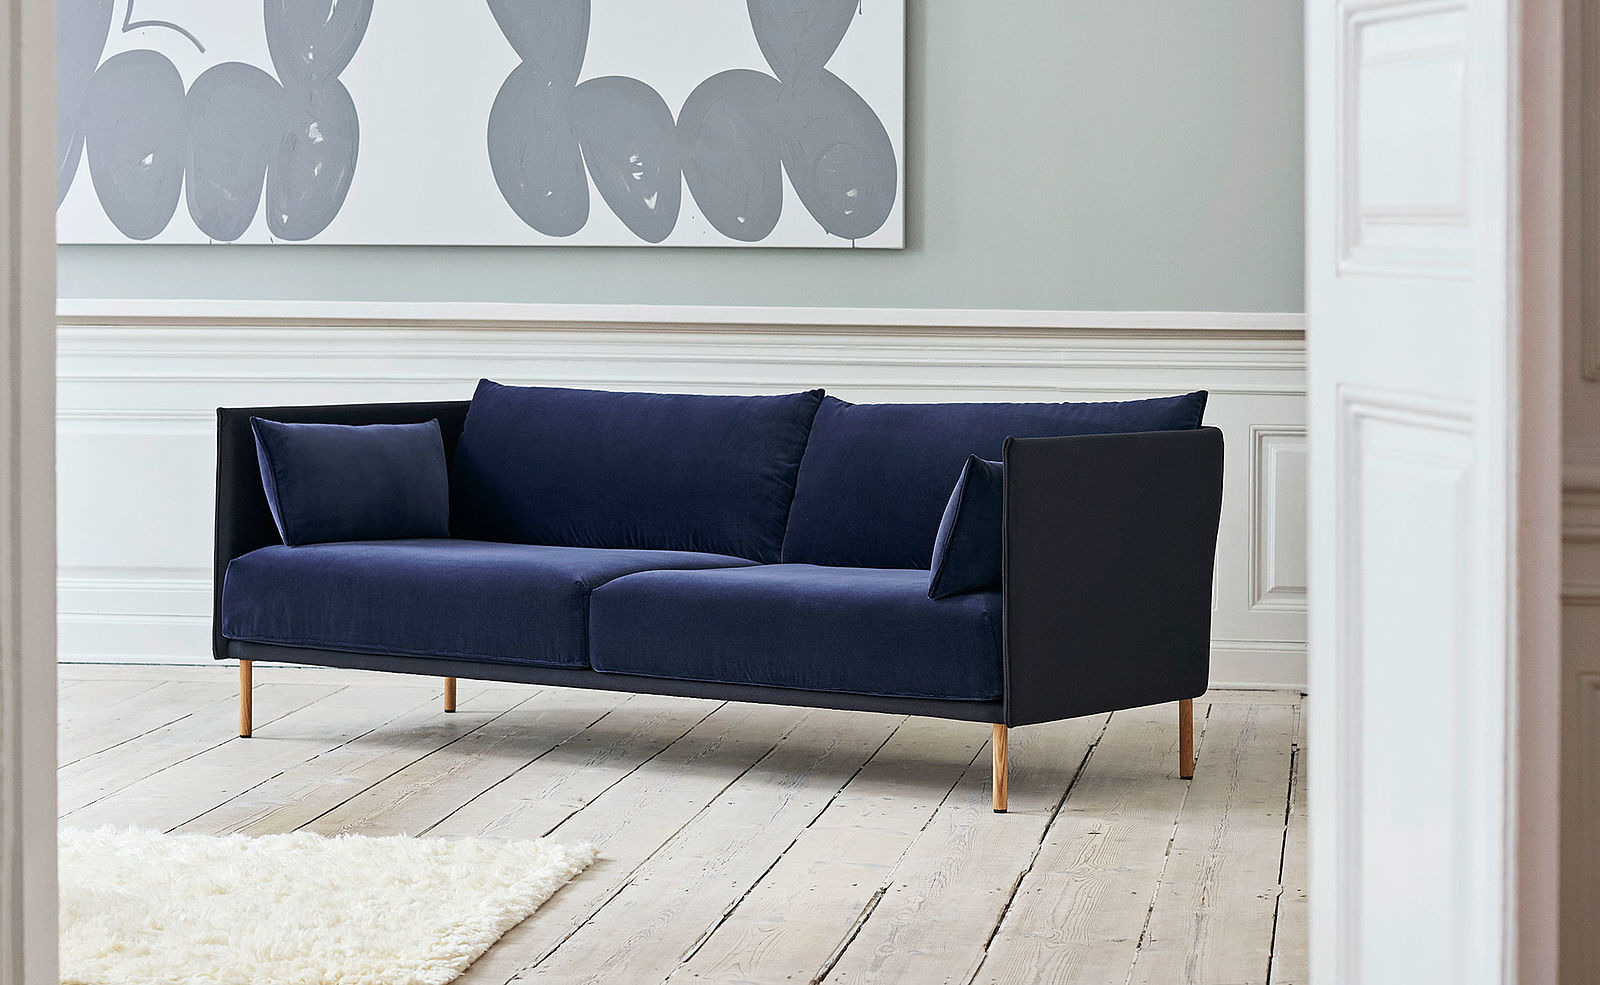 POPO Bremen Möbel Dreisitzer Sofa 'Silhouette' mit dunkelblauem Bezug im HAY-Flagshsipstore